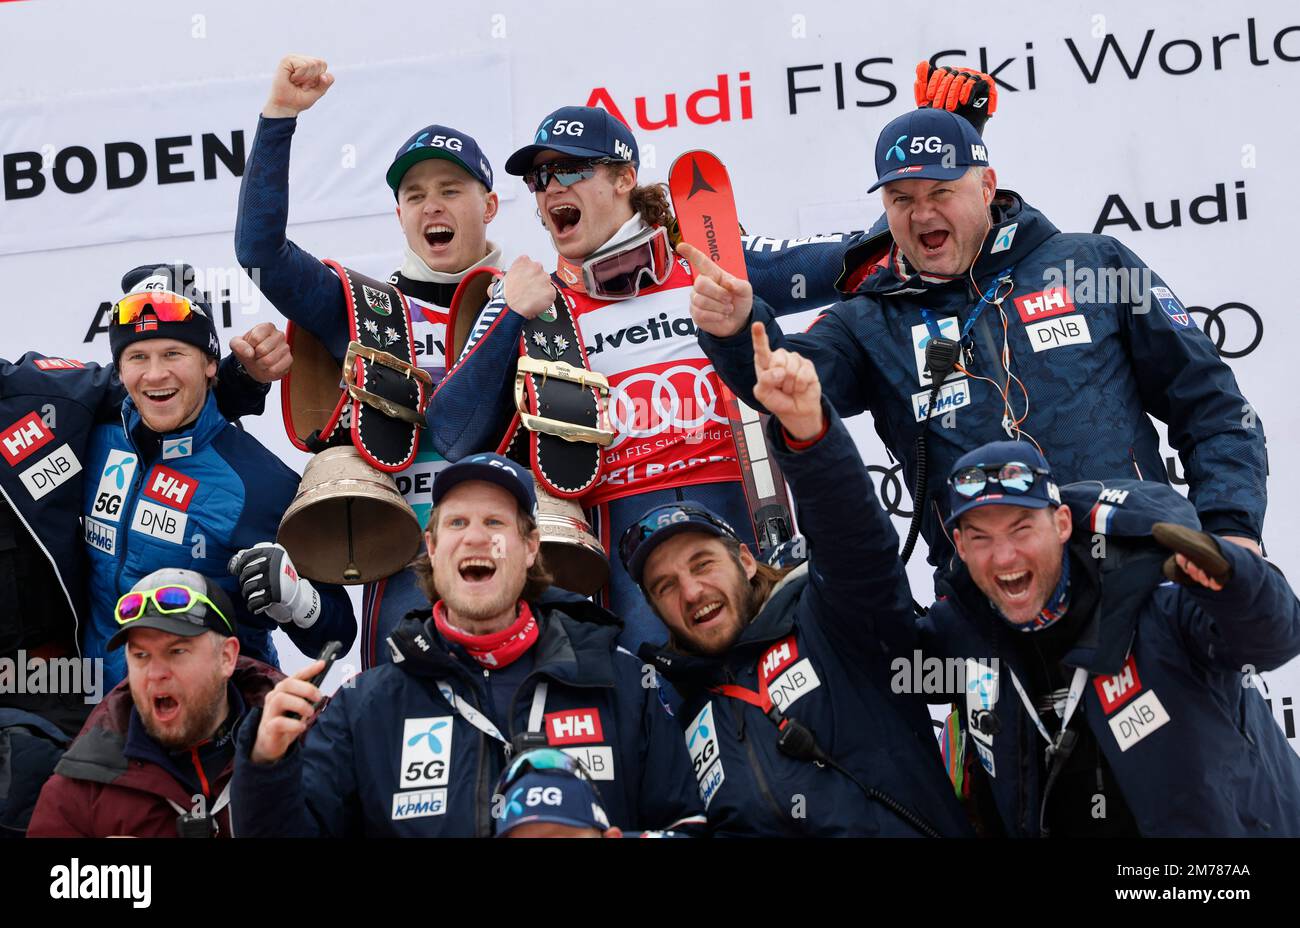 Ski alpin - FIS coupe du monde de ski alpin - Slalom masculin - Adelboden, Suisse - Lucas Braathen, de 8 janvier 2023 Norvège, célèbre avec le trophée après avoir remporté le trophée aux côtés de ses coéquipiers REUTERS/Stefan Wermuth Banque D'Images